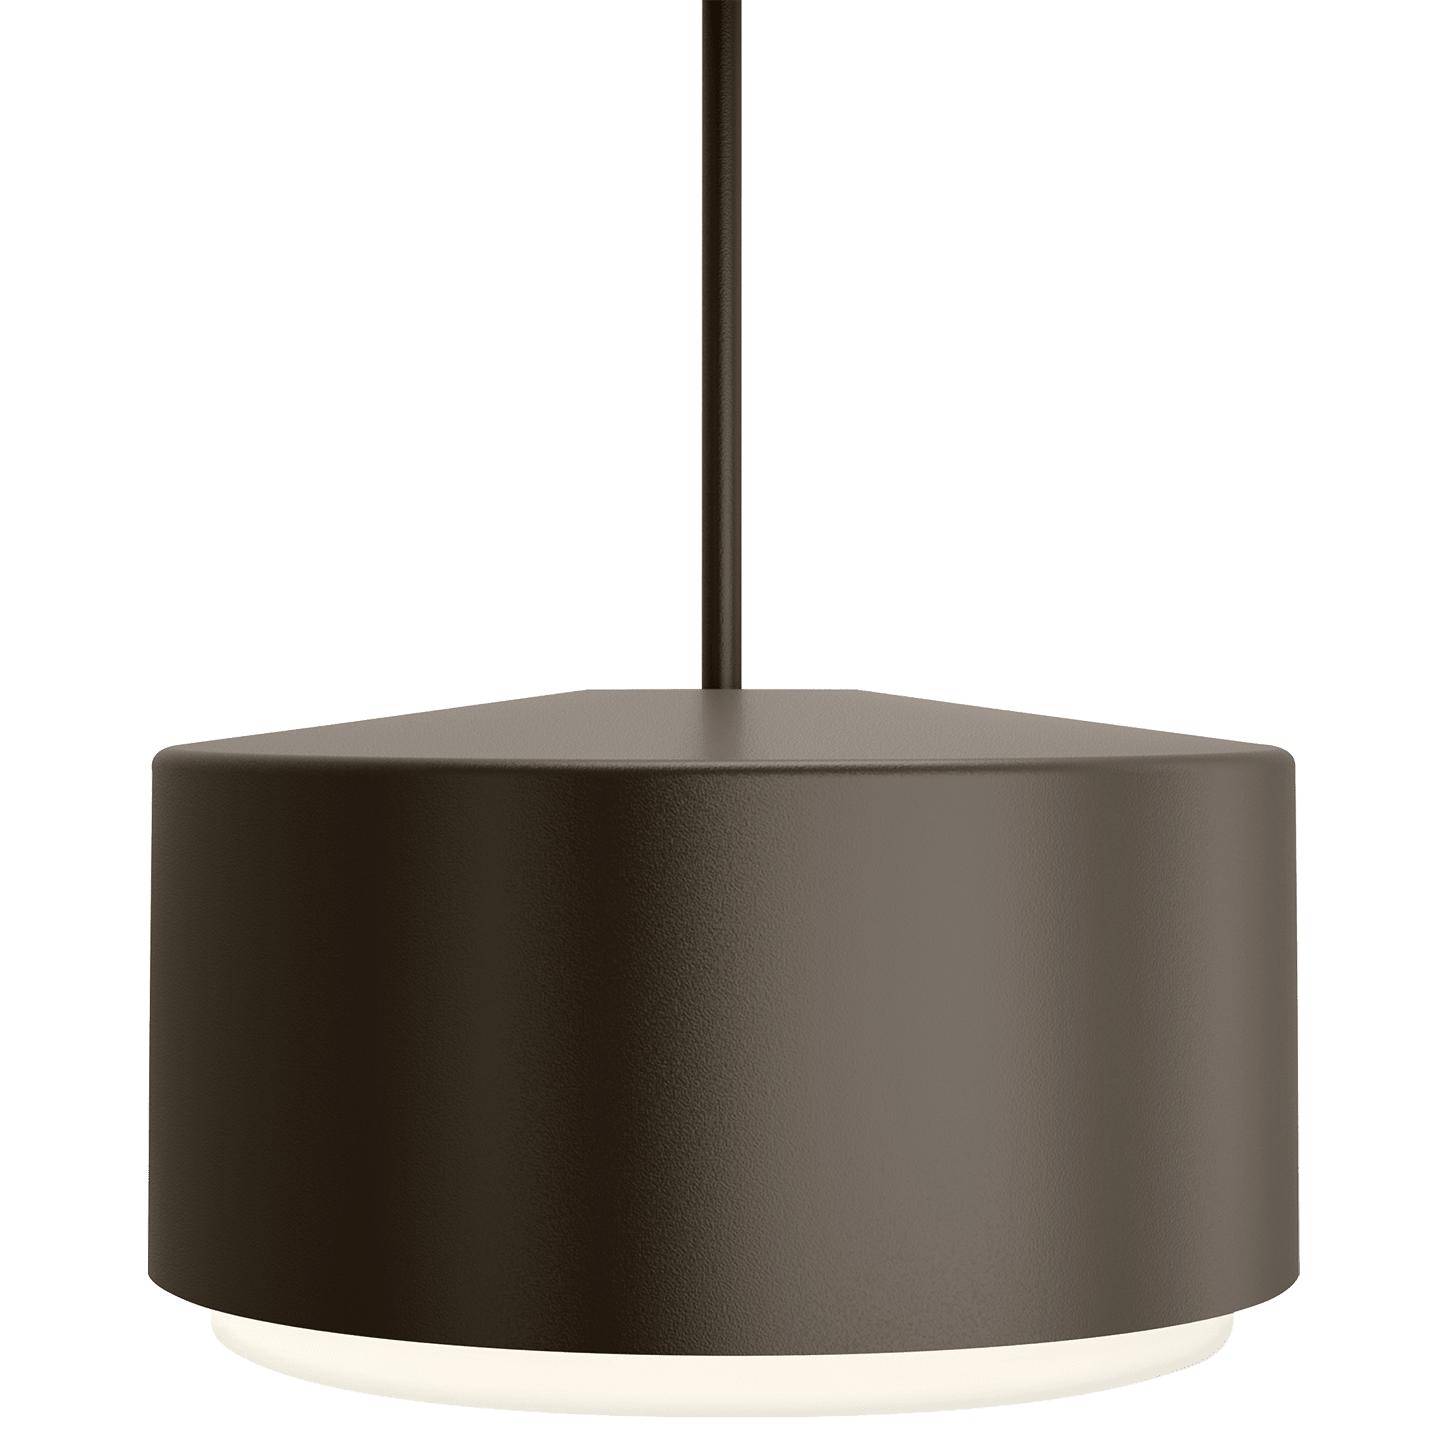 Купить Подвесной светильник Roton 18 Outdoor Pendant в интернет-магазине roooms.ru